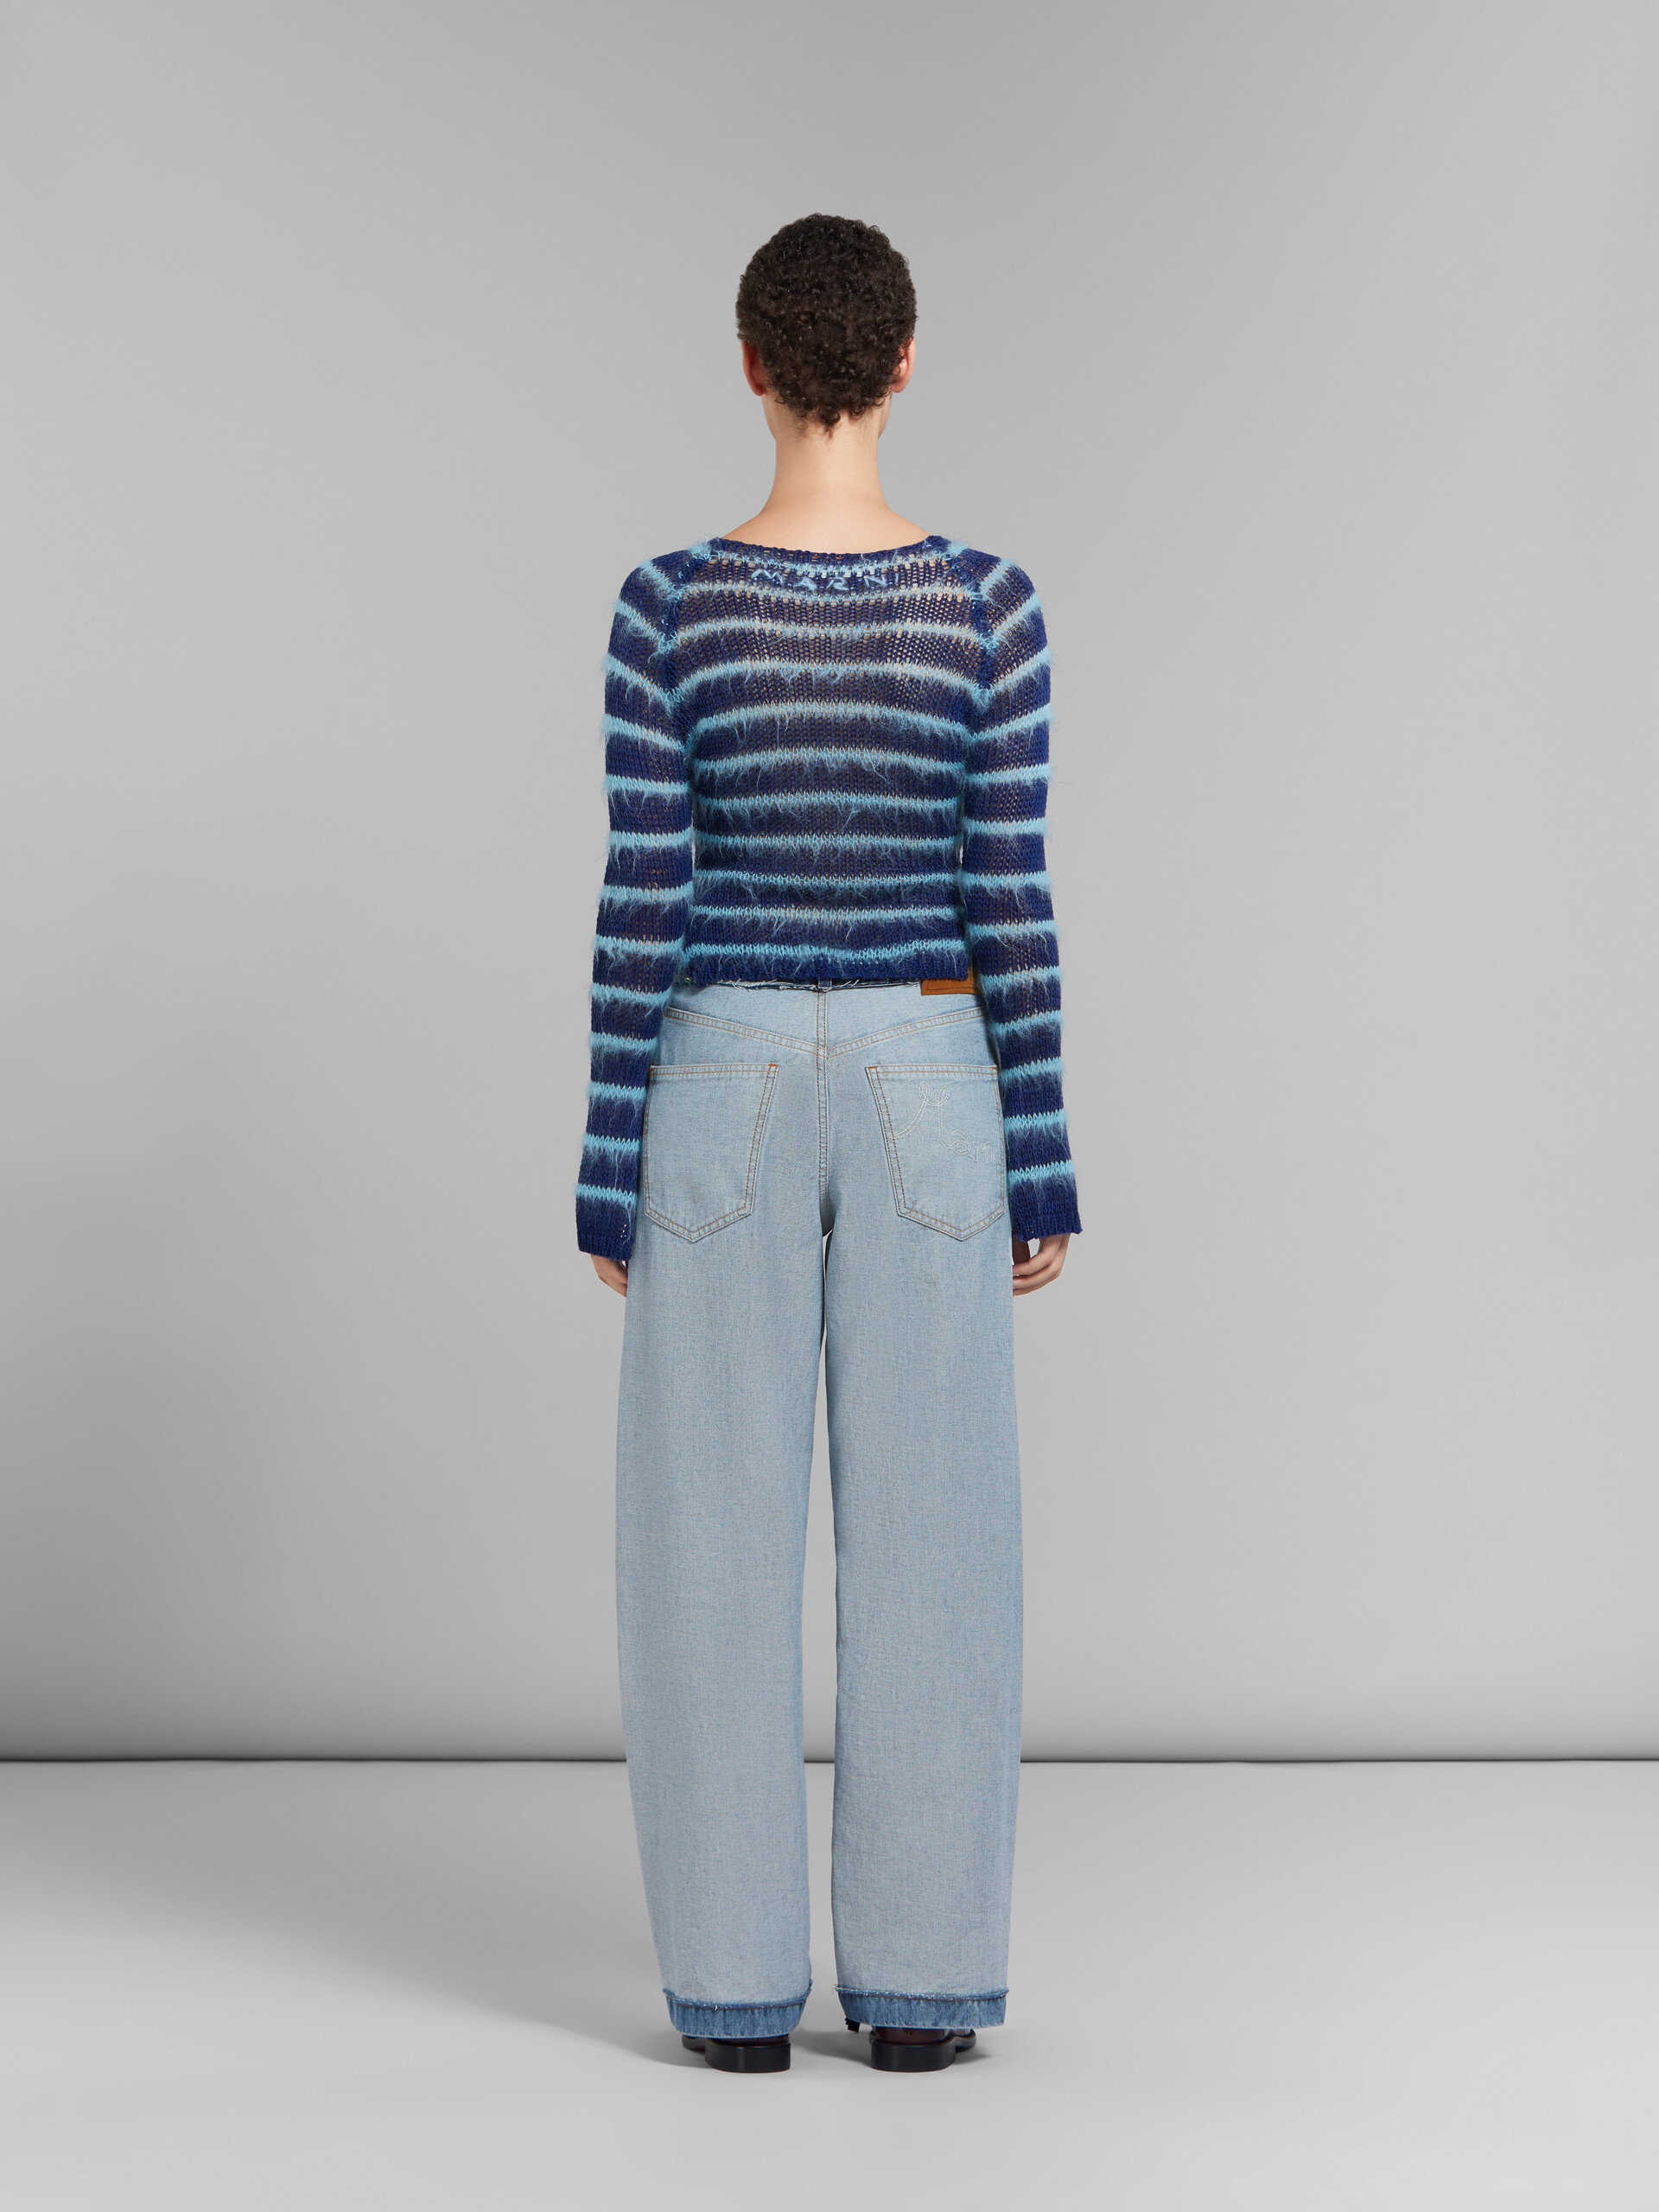 Blaue Denim-Jeans in Inside-Out-Optik und Karottenpassform - Hosen - Image 3